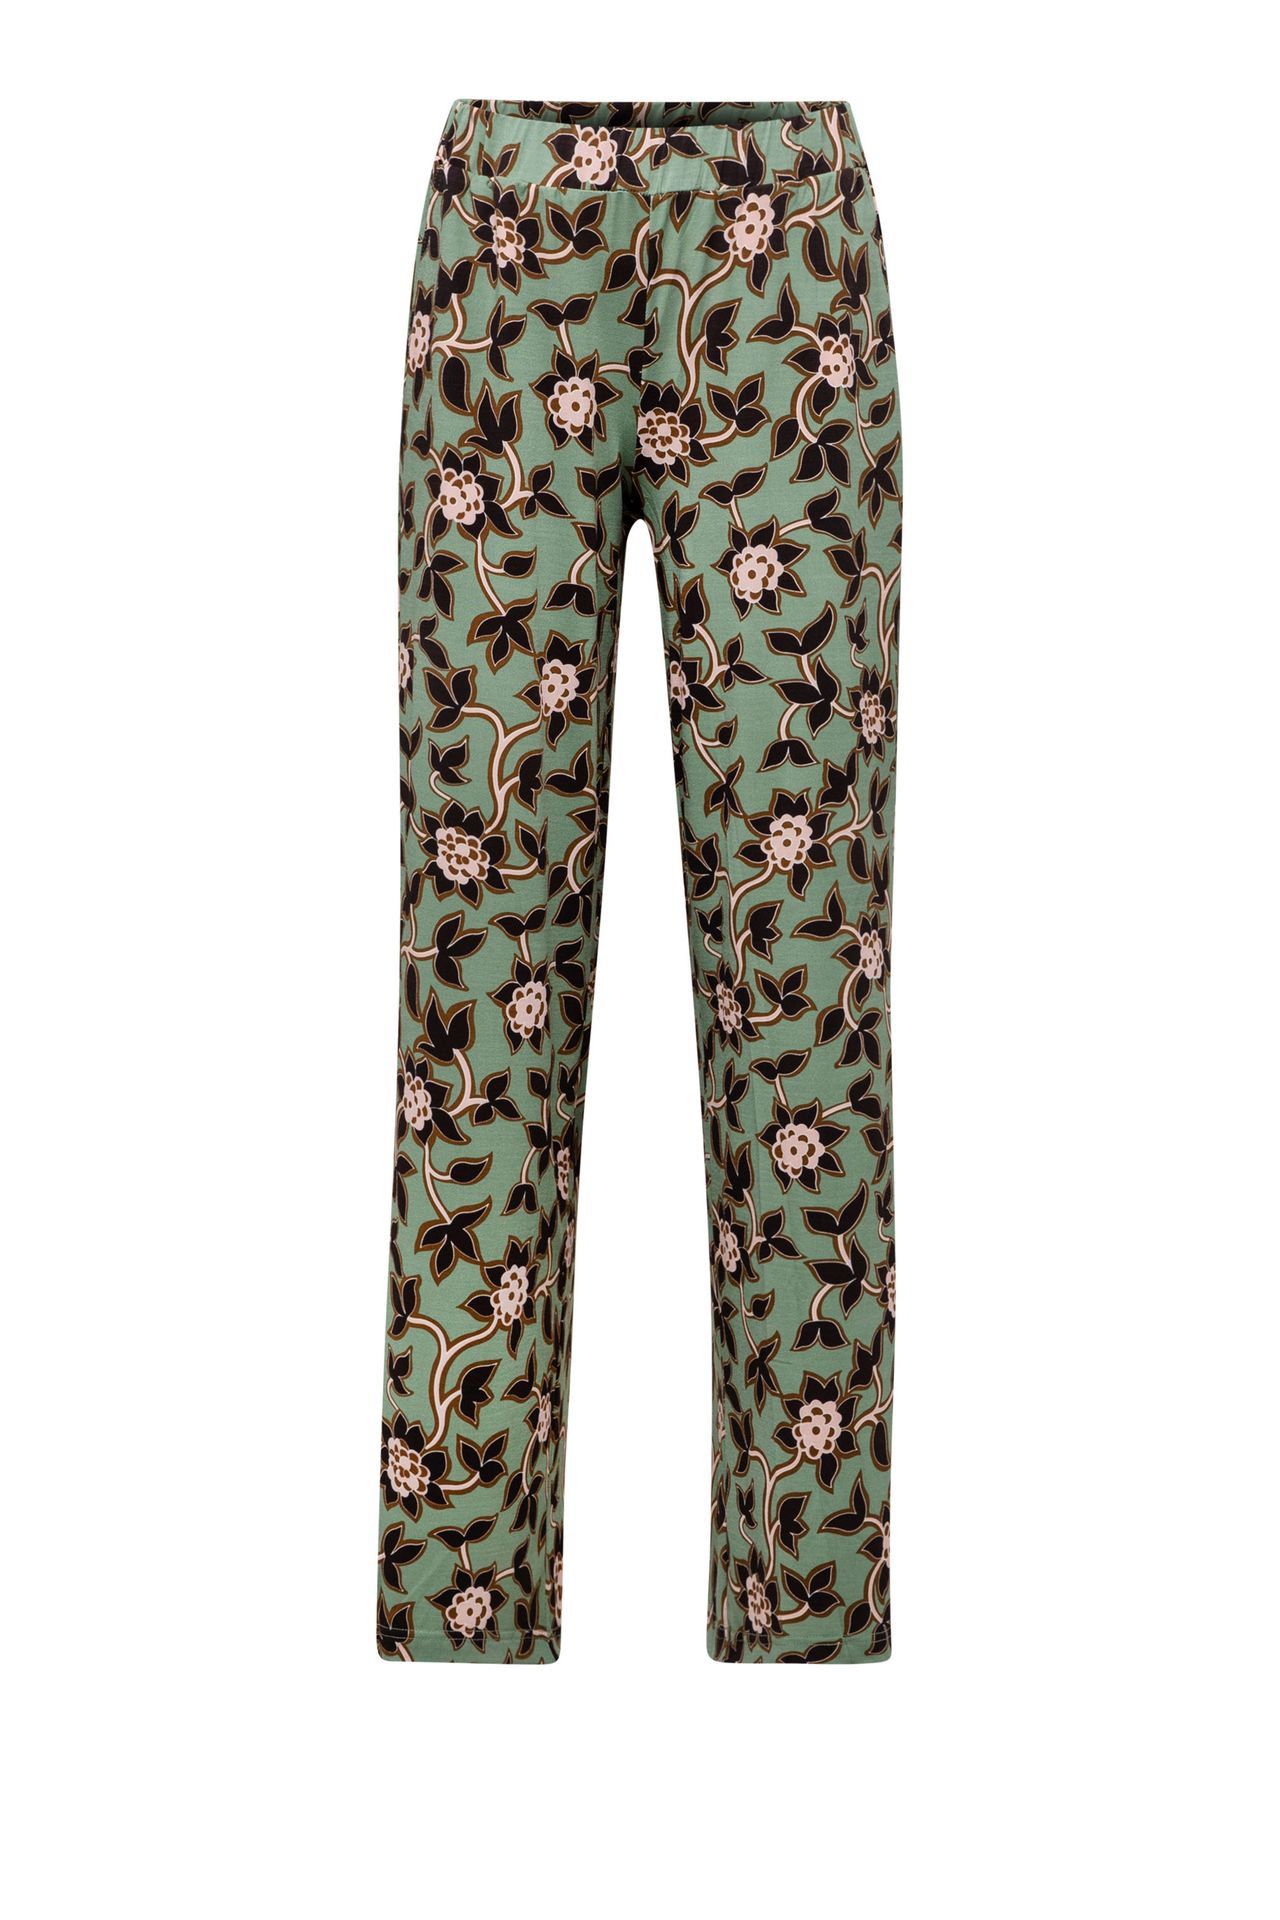 Norah Groene broek met botanische print green multicolor 213880-520